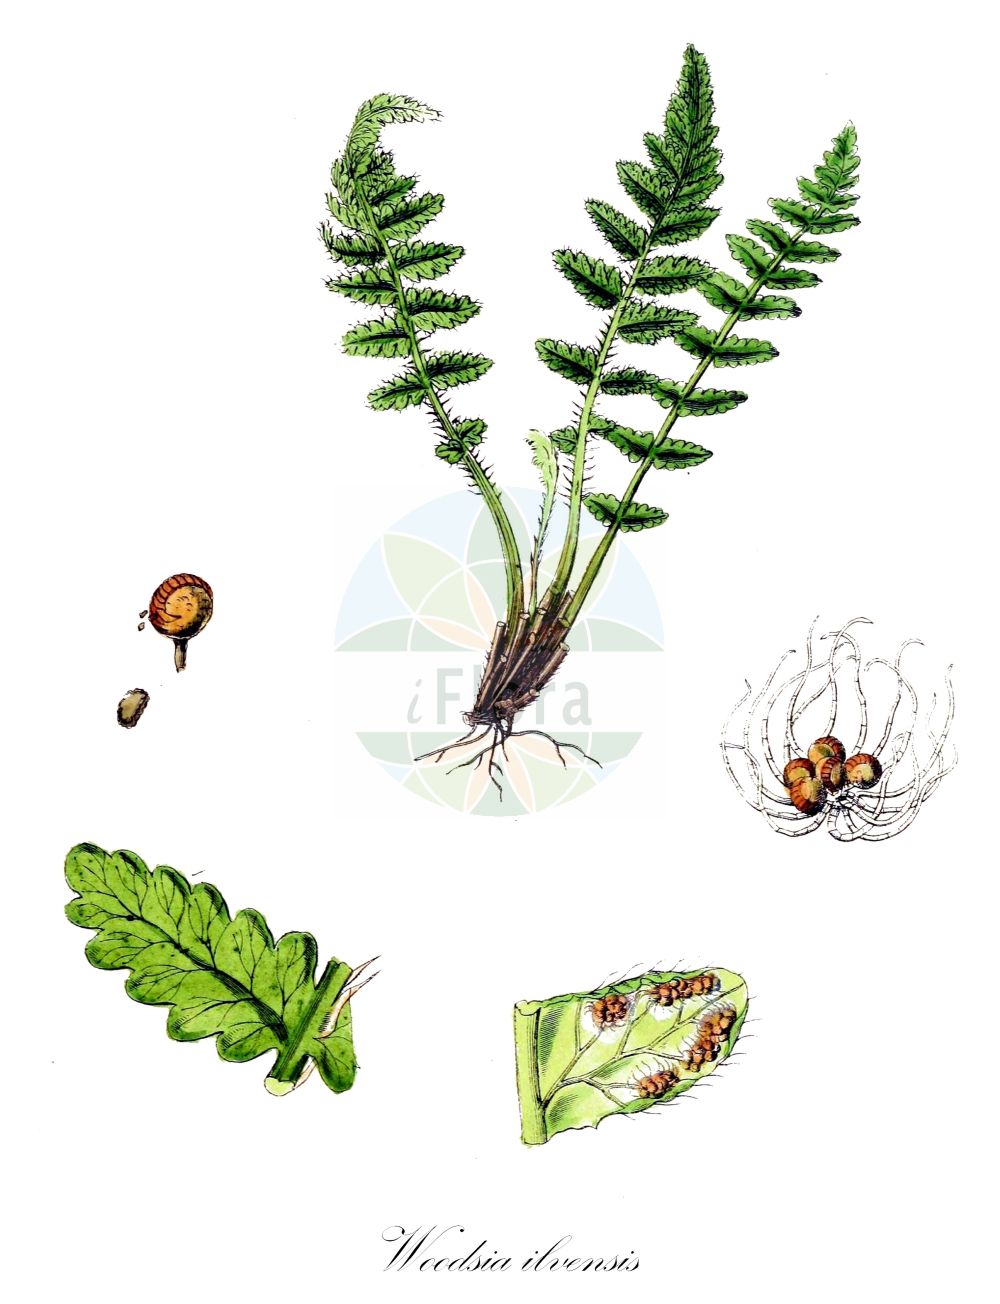 Historische Abbildung von Woodsia ilvensis (Südlicher Wimperfarn - Oblong Woodsia). Das Bild zeigt Blatt, Bluete, Frucht und Same. ---- Historical Drawing of Woodsia ilvensis (Südlicher Wimperfarn - Oblong Woodsia). The image is showing leaf, flower, fruit and seed.(Woodsia ilvensis,Südlicher Wimperfarn,Oblong Woodsia,Acrostichum ilvense,Nephrodium rufidulum,Woodsia ilvensis,Woodsia rufidula,Suedlicher Wimperfarn,Rostroter Wimperfarn,Oblong Woodsia,Rusty Woodsia,Woodsia,Wimperfarn,Cliff Fern,Woodsiaceae,Wimperfarngewächse,Cliff Fern family,Blatt,Bluete,Frucht,Same,leaf,flower,fruit,seed,Sowerby (1790-1813))